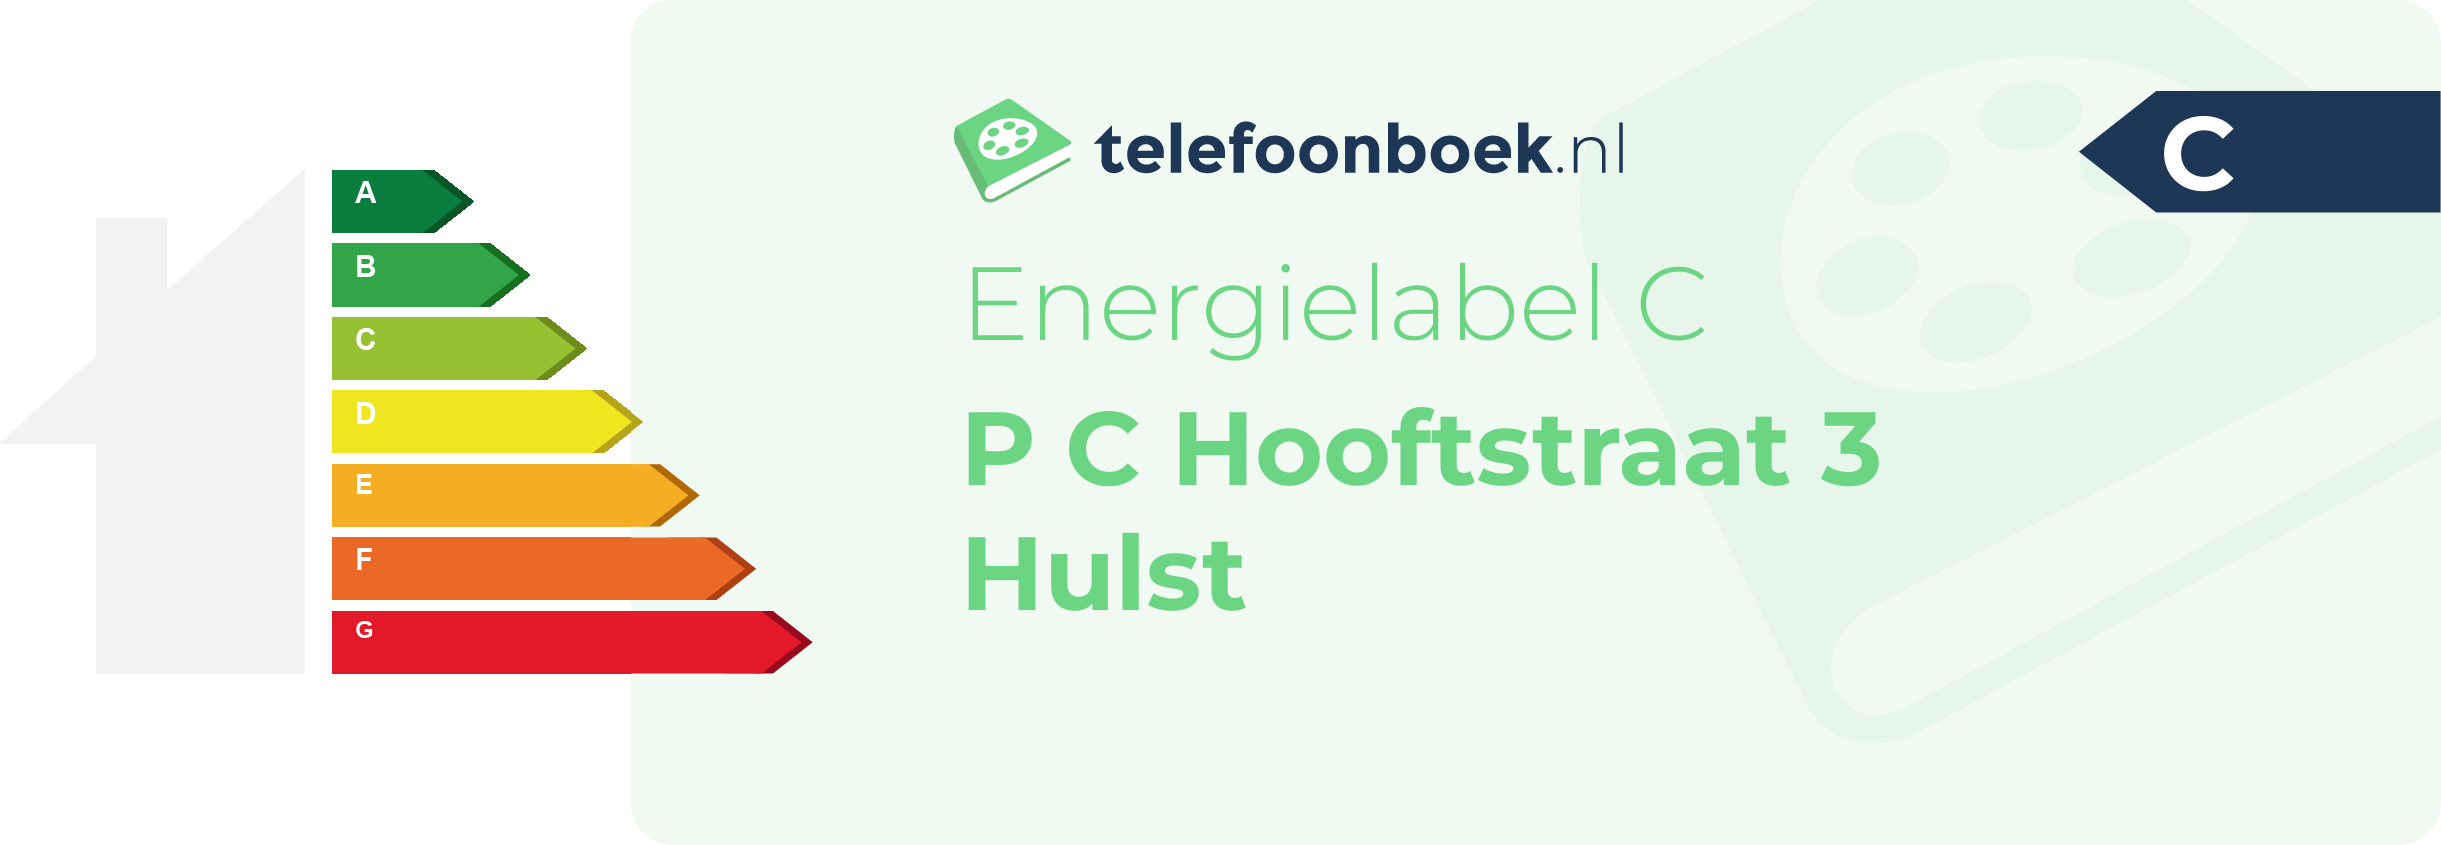 Energielabel P C Hooftstraat 3 Hulst